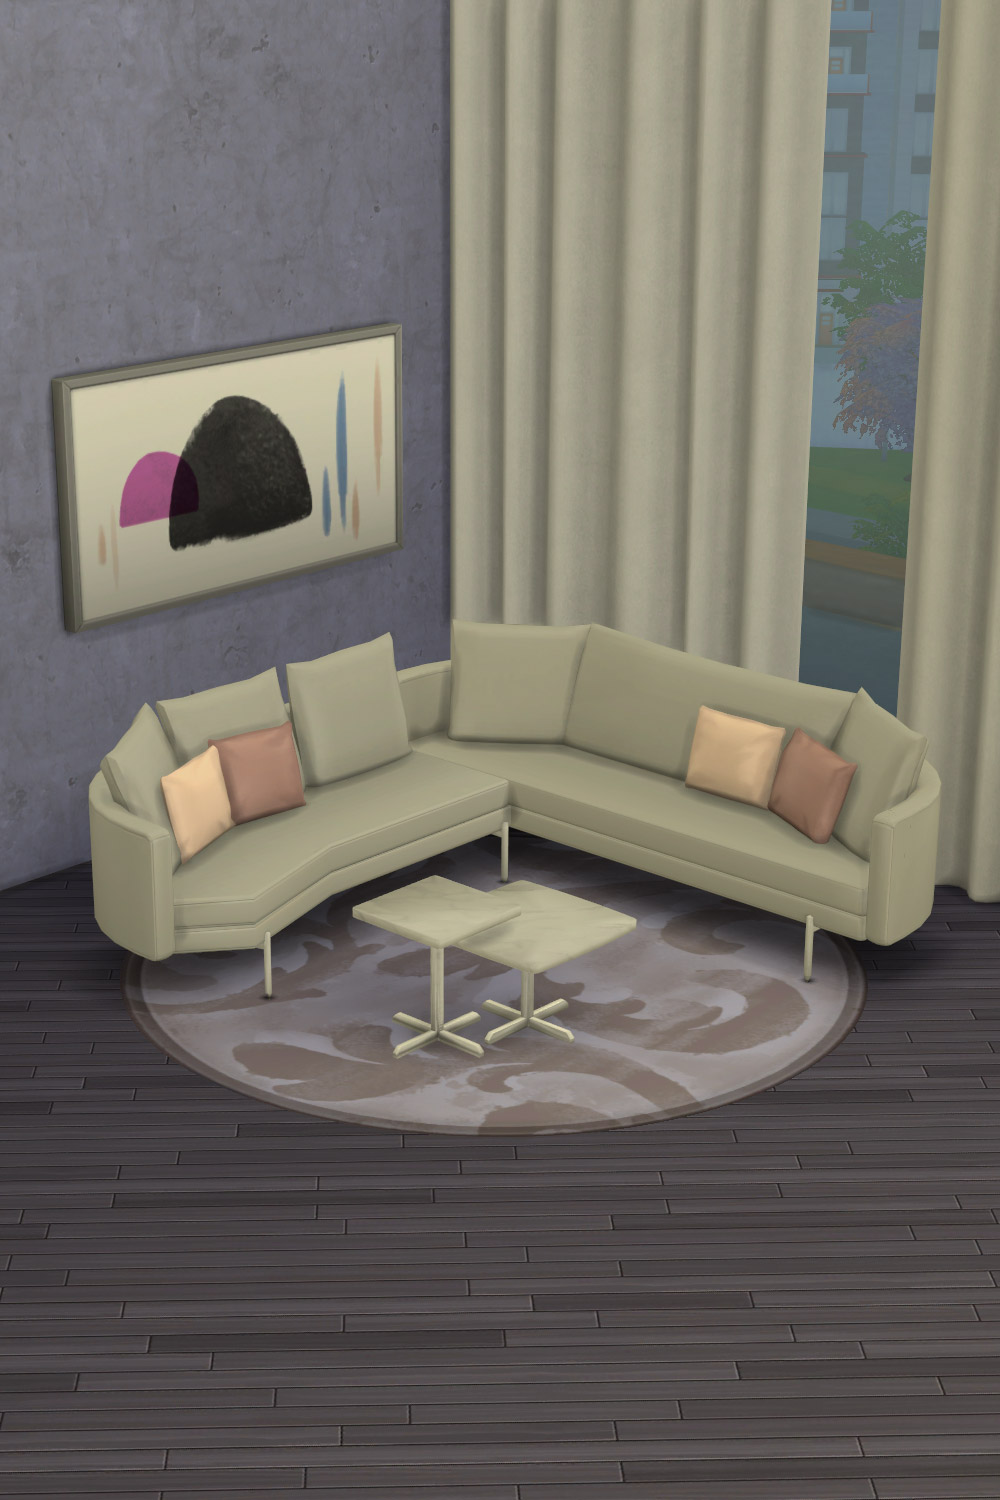 The Sims 4 CC Furniture Sofa Set